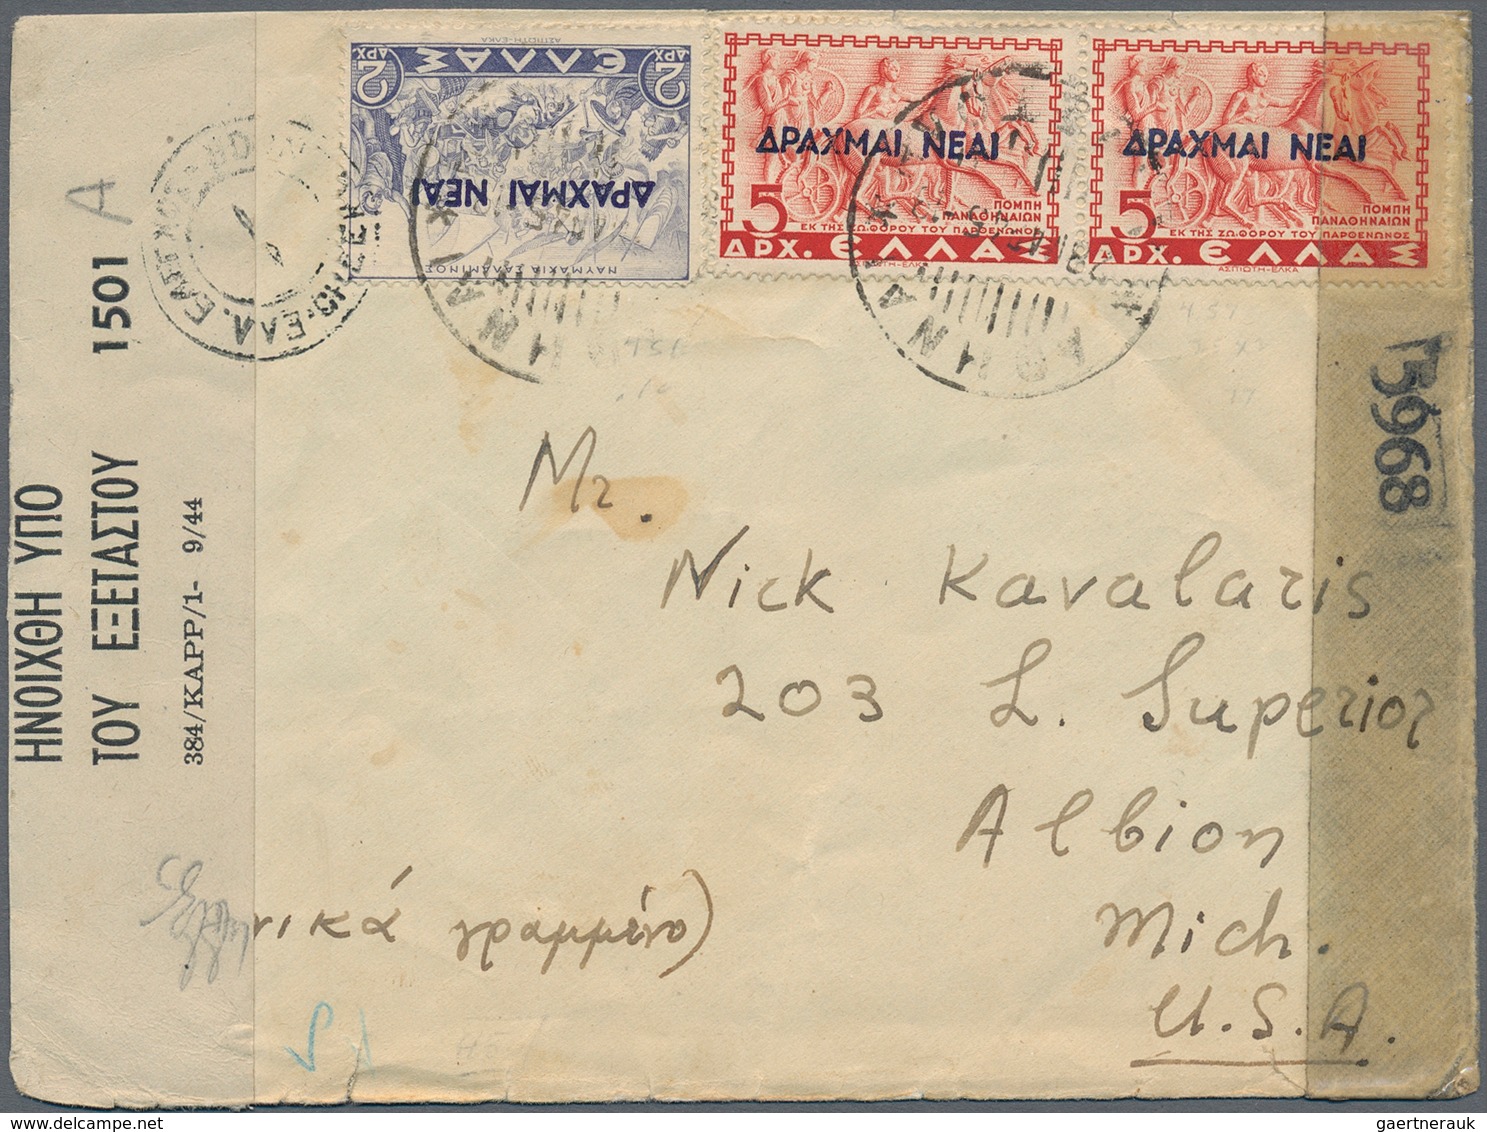 Griechenland: 1886 - 1960 (ca.), Posten von über 80 Belegen, dabei Samos, Zensur WK I., Kreta nach U